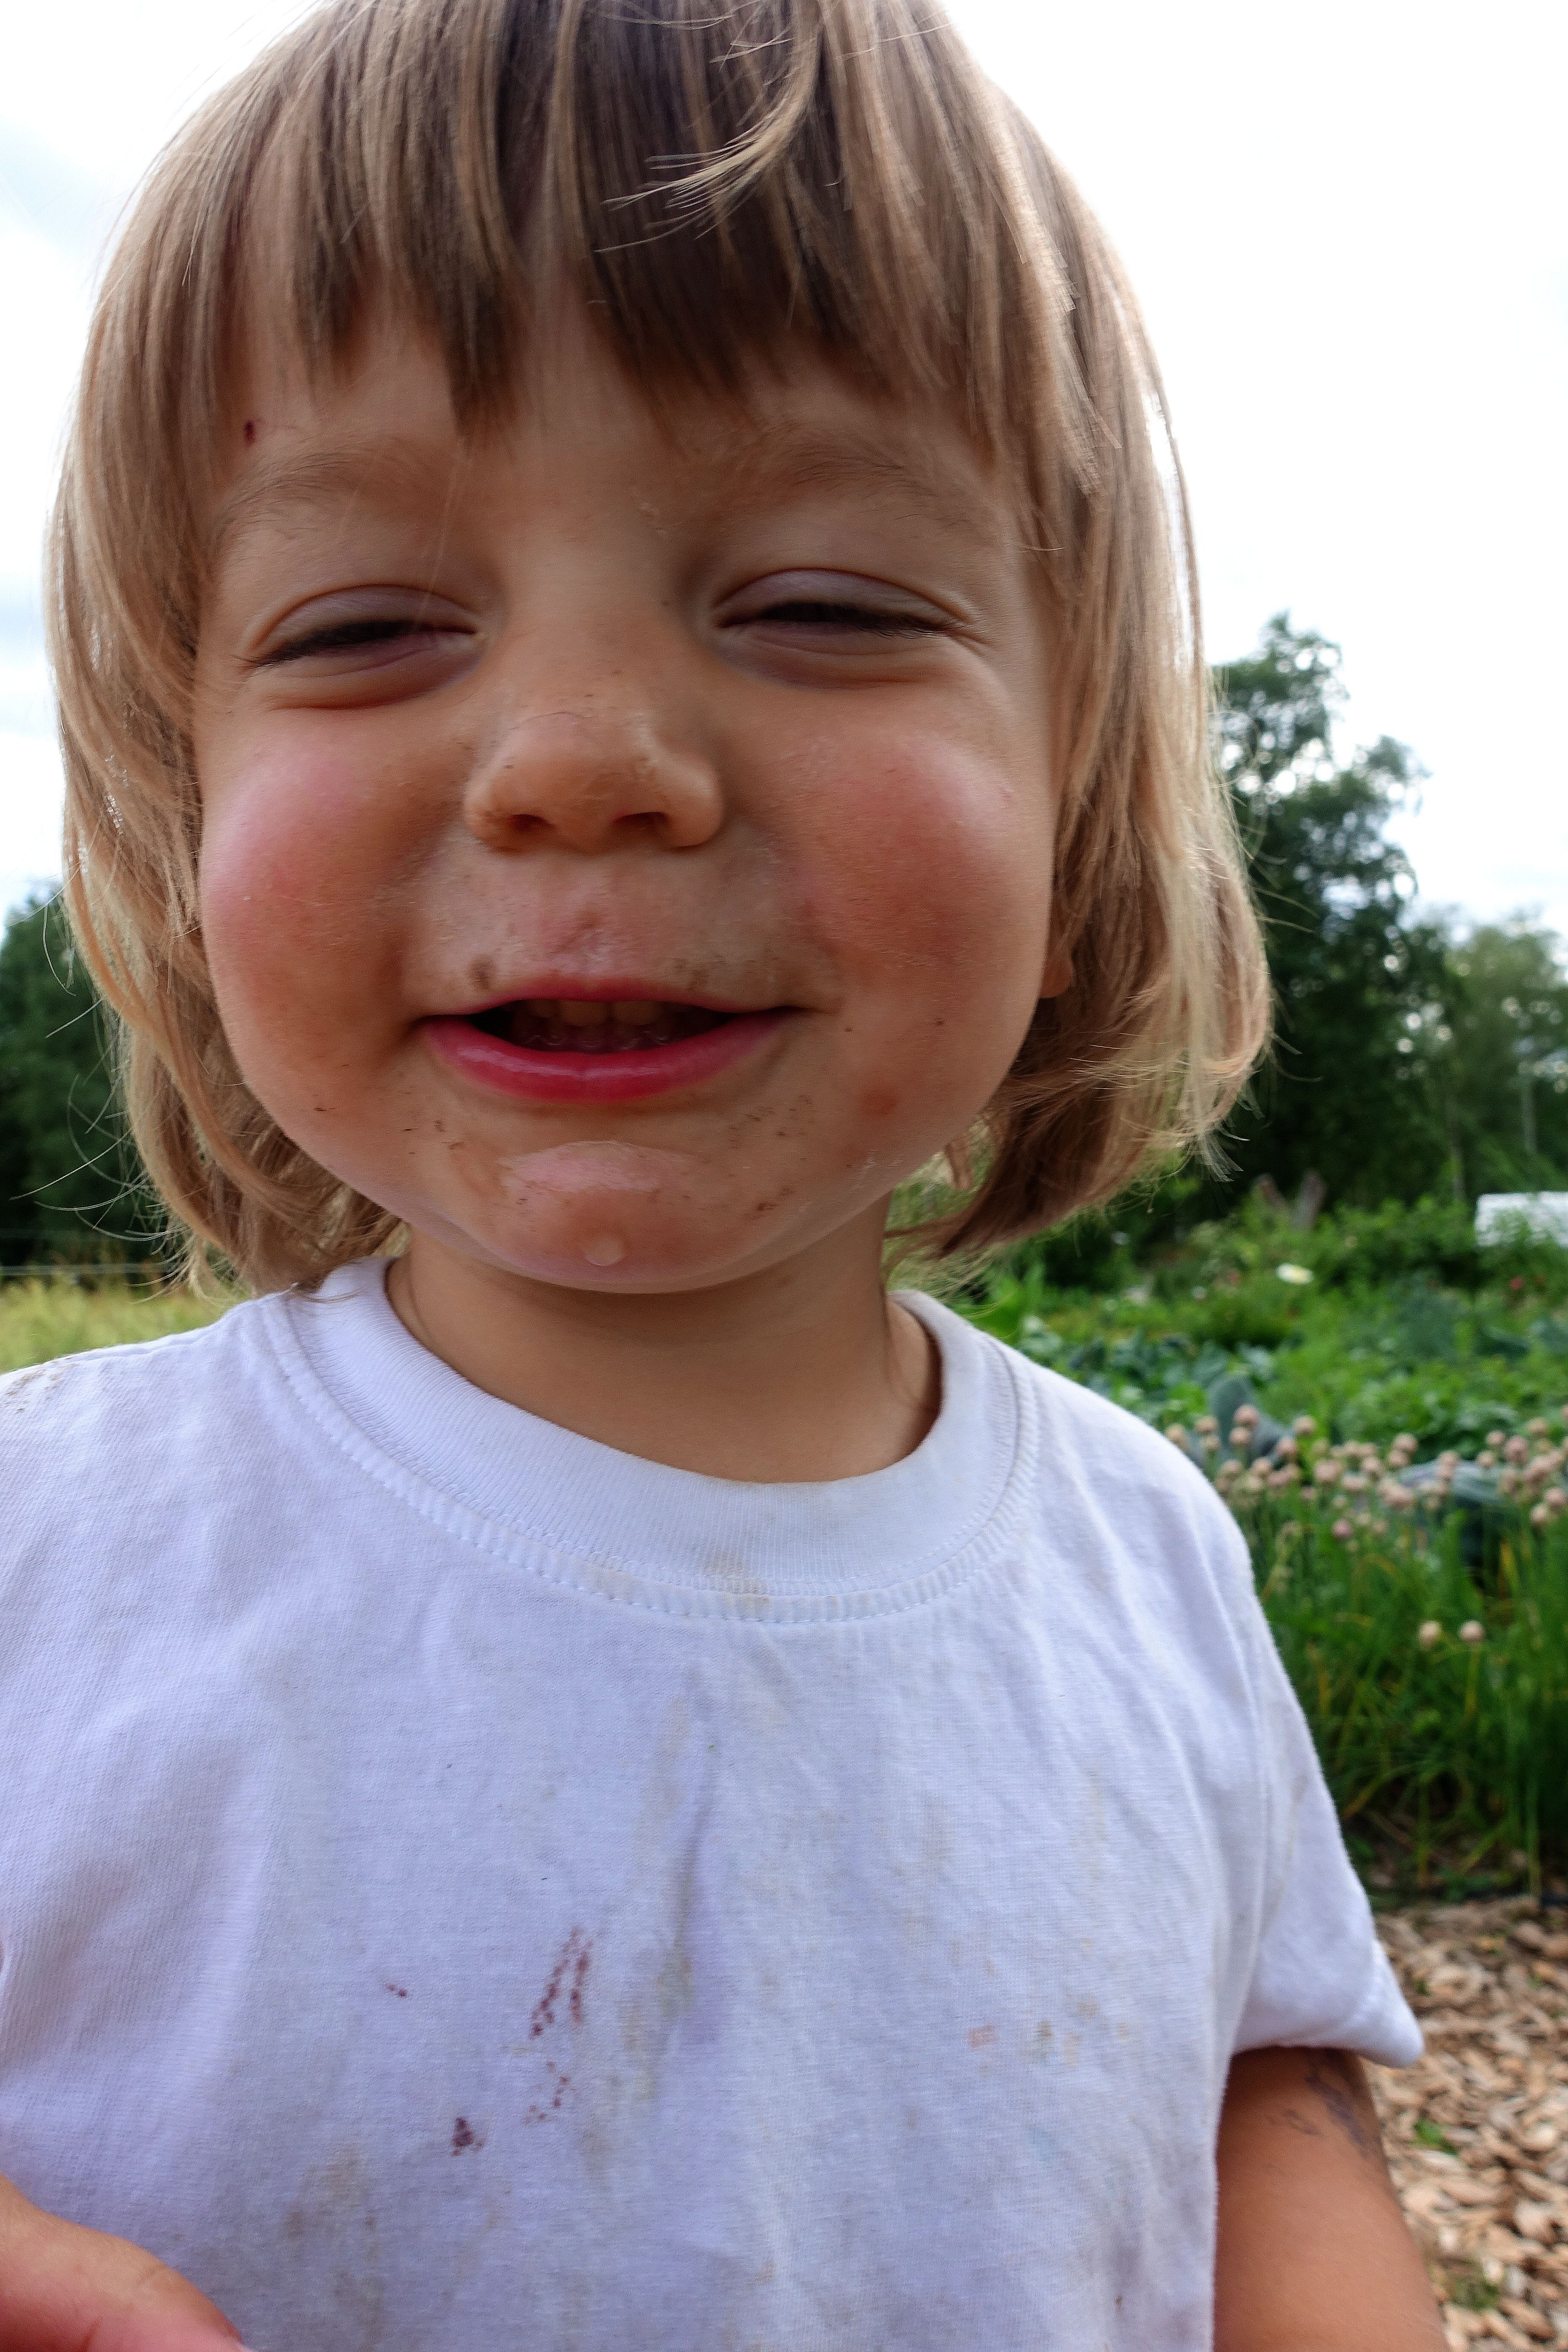 Ett glatt barn, smutsigt i ansiktet. Gardening with kids, Loa with dirt on his face. 